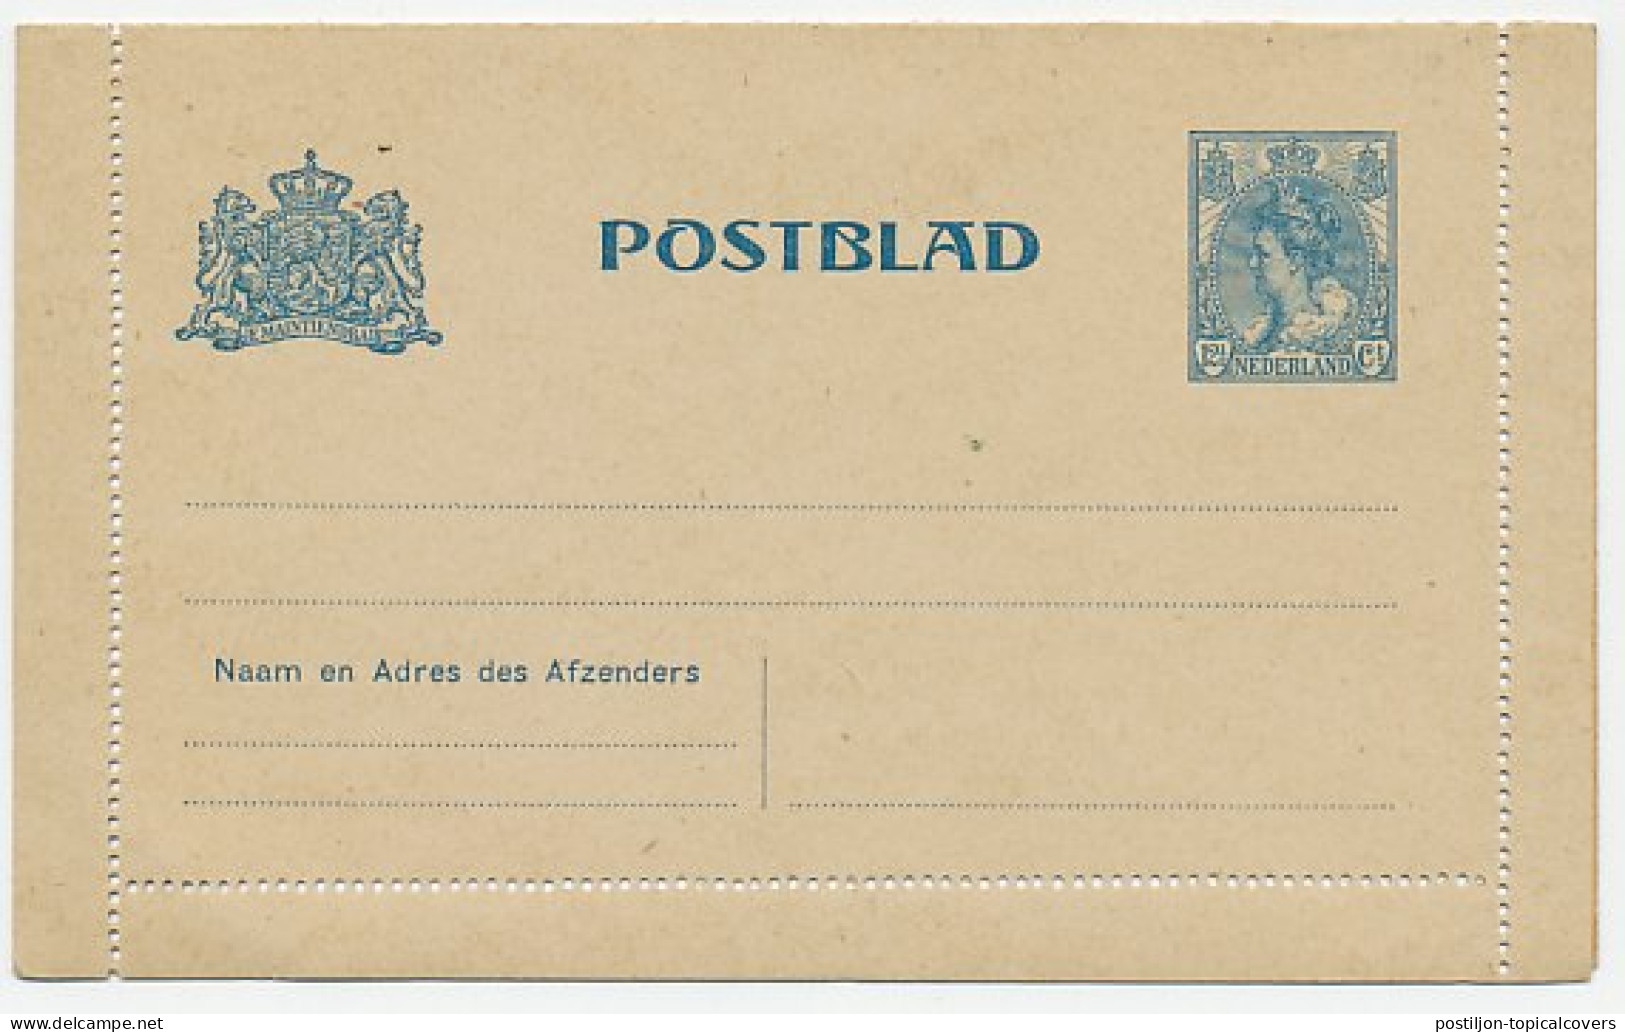 Postblad G. 15 - Ganzsachen